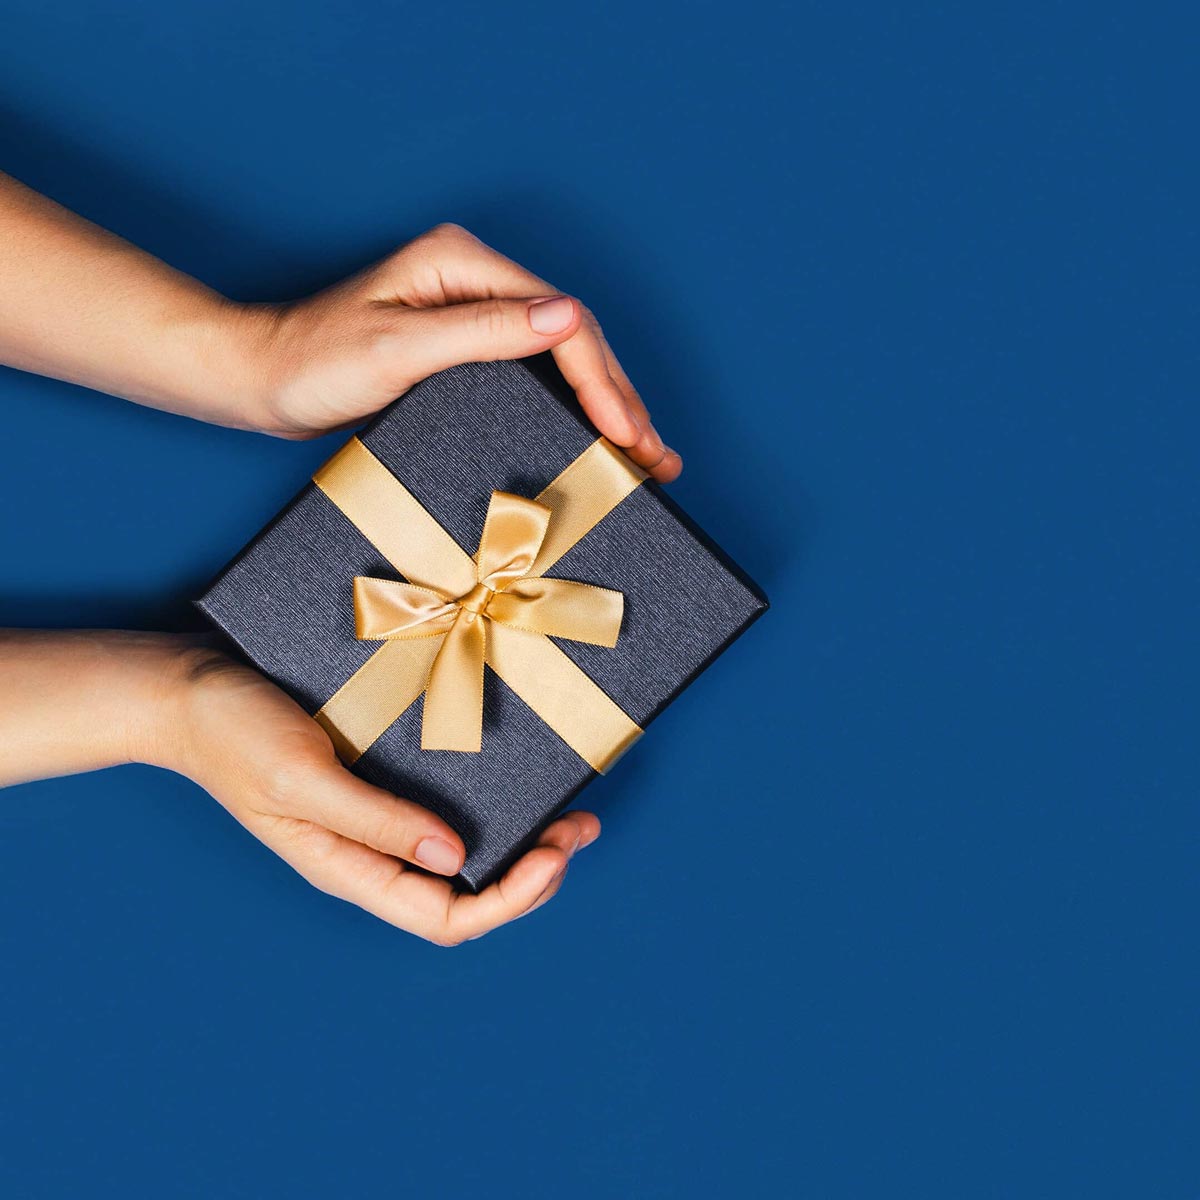 Une personne tient un paquet cadeau jaune or entre ses mains devant un fond bleu